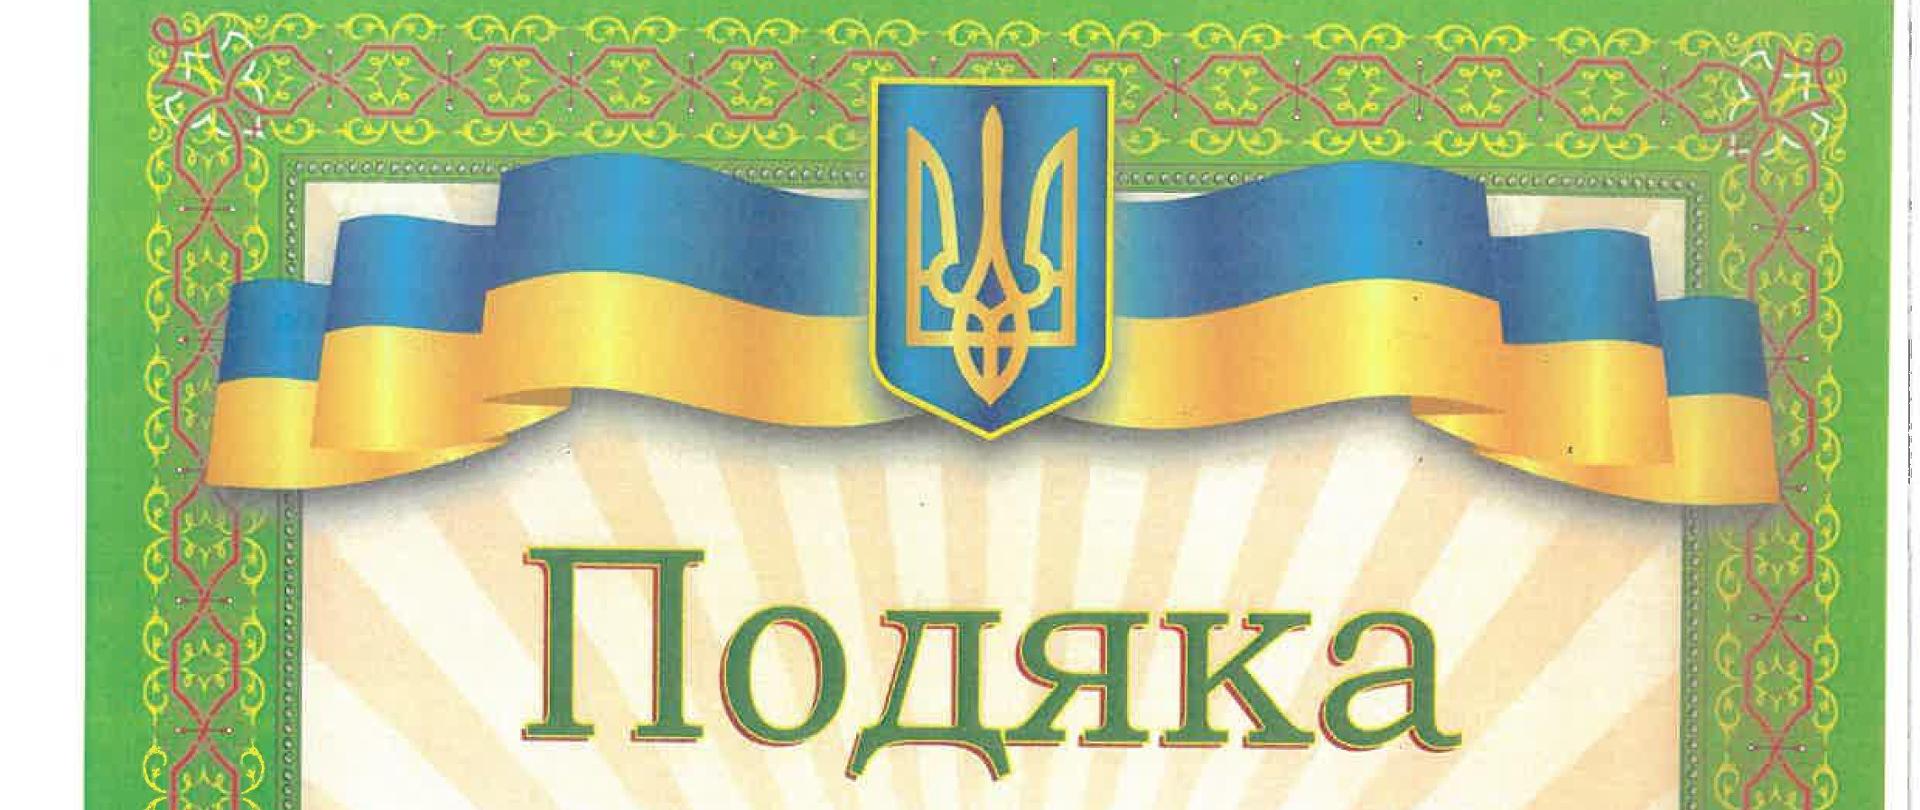 Podziękowanie w języku ukraińskim za zbiórkę na rzecz obywateli Ukrainy